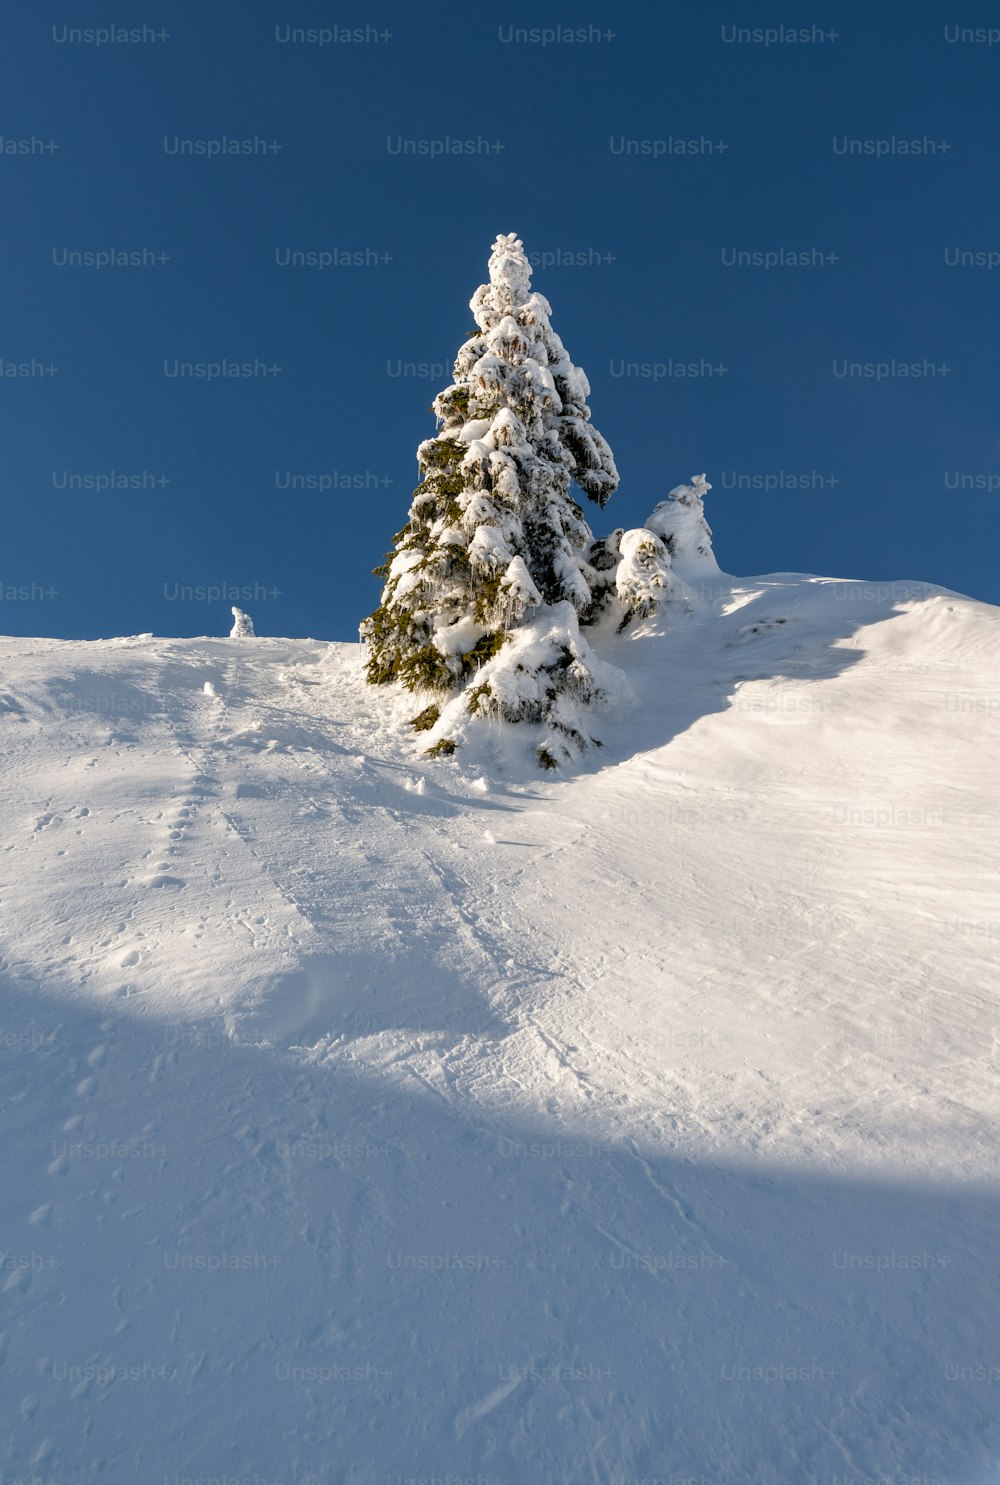 雪に覆われた丘の上の孤独な松の木